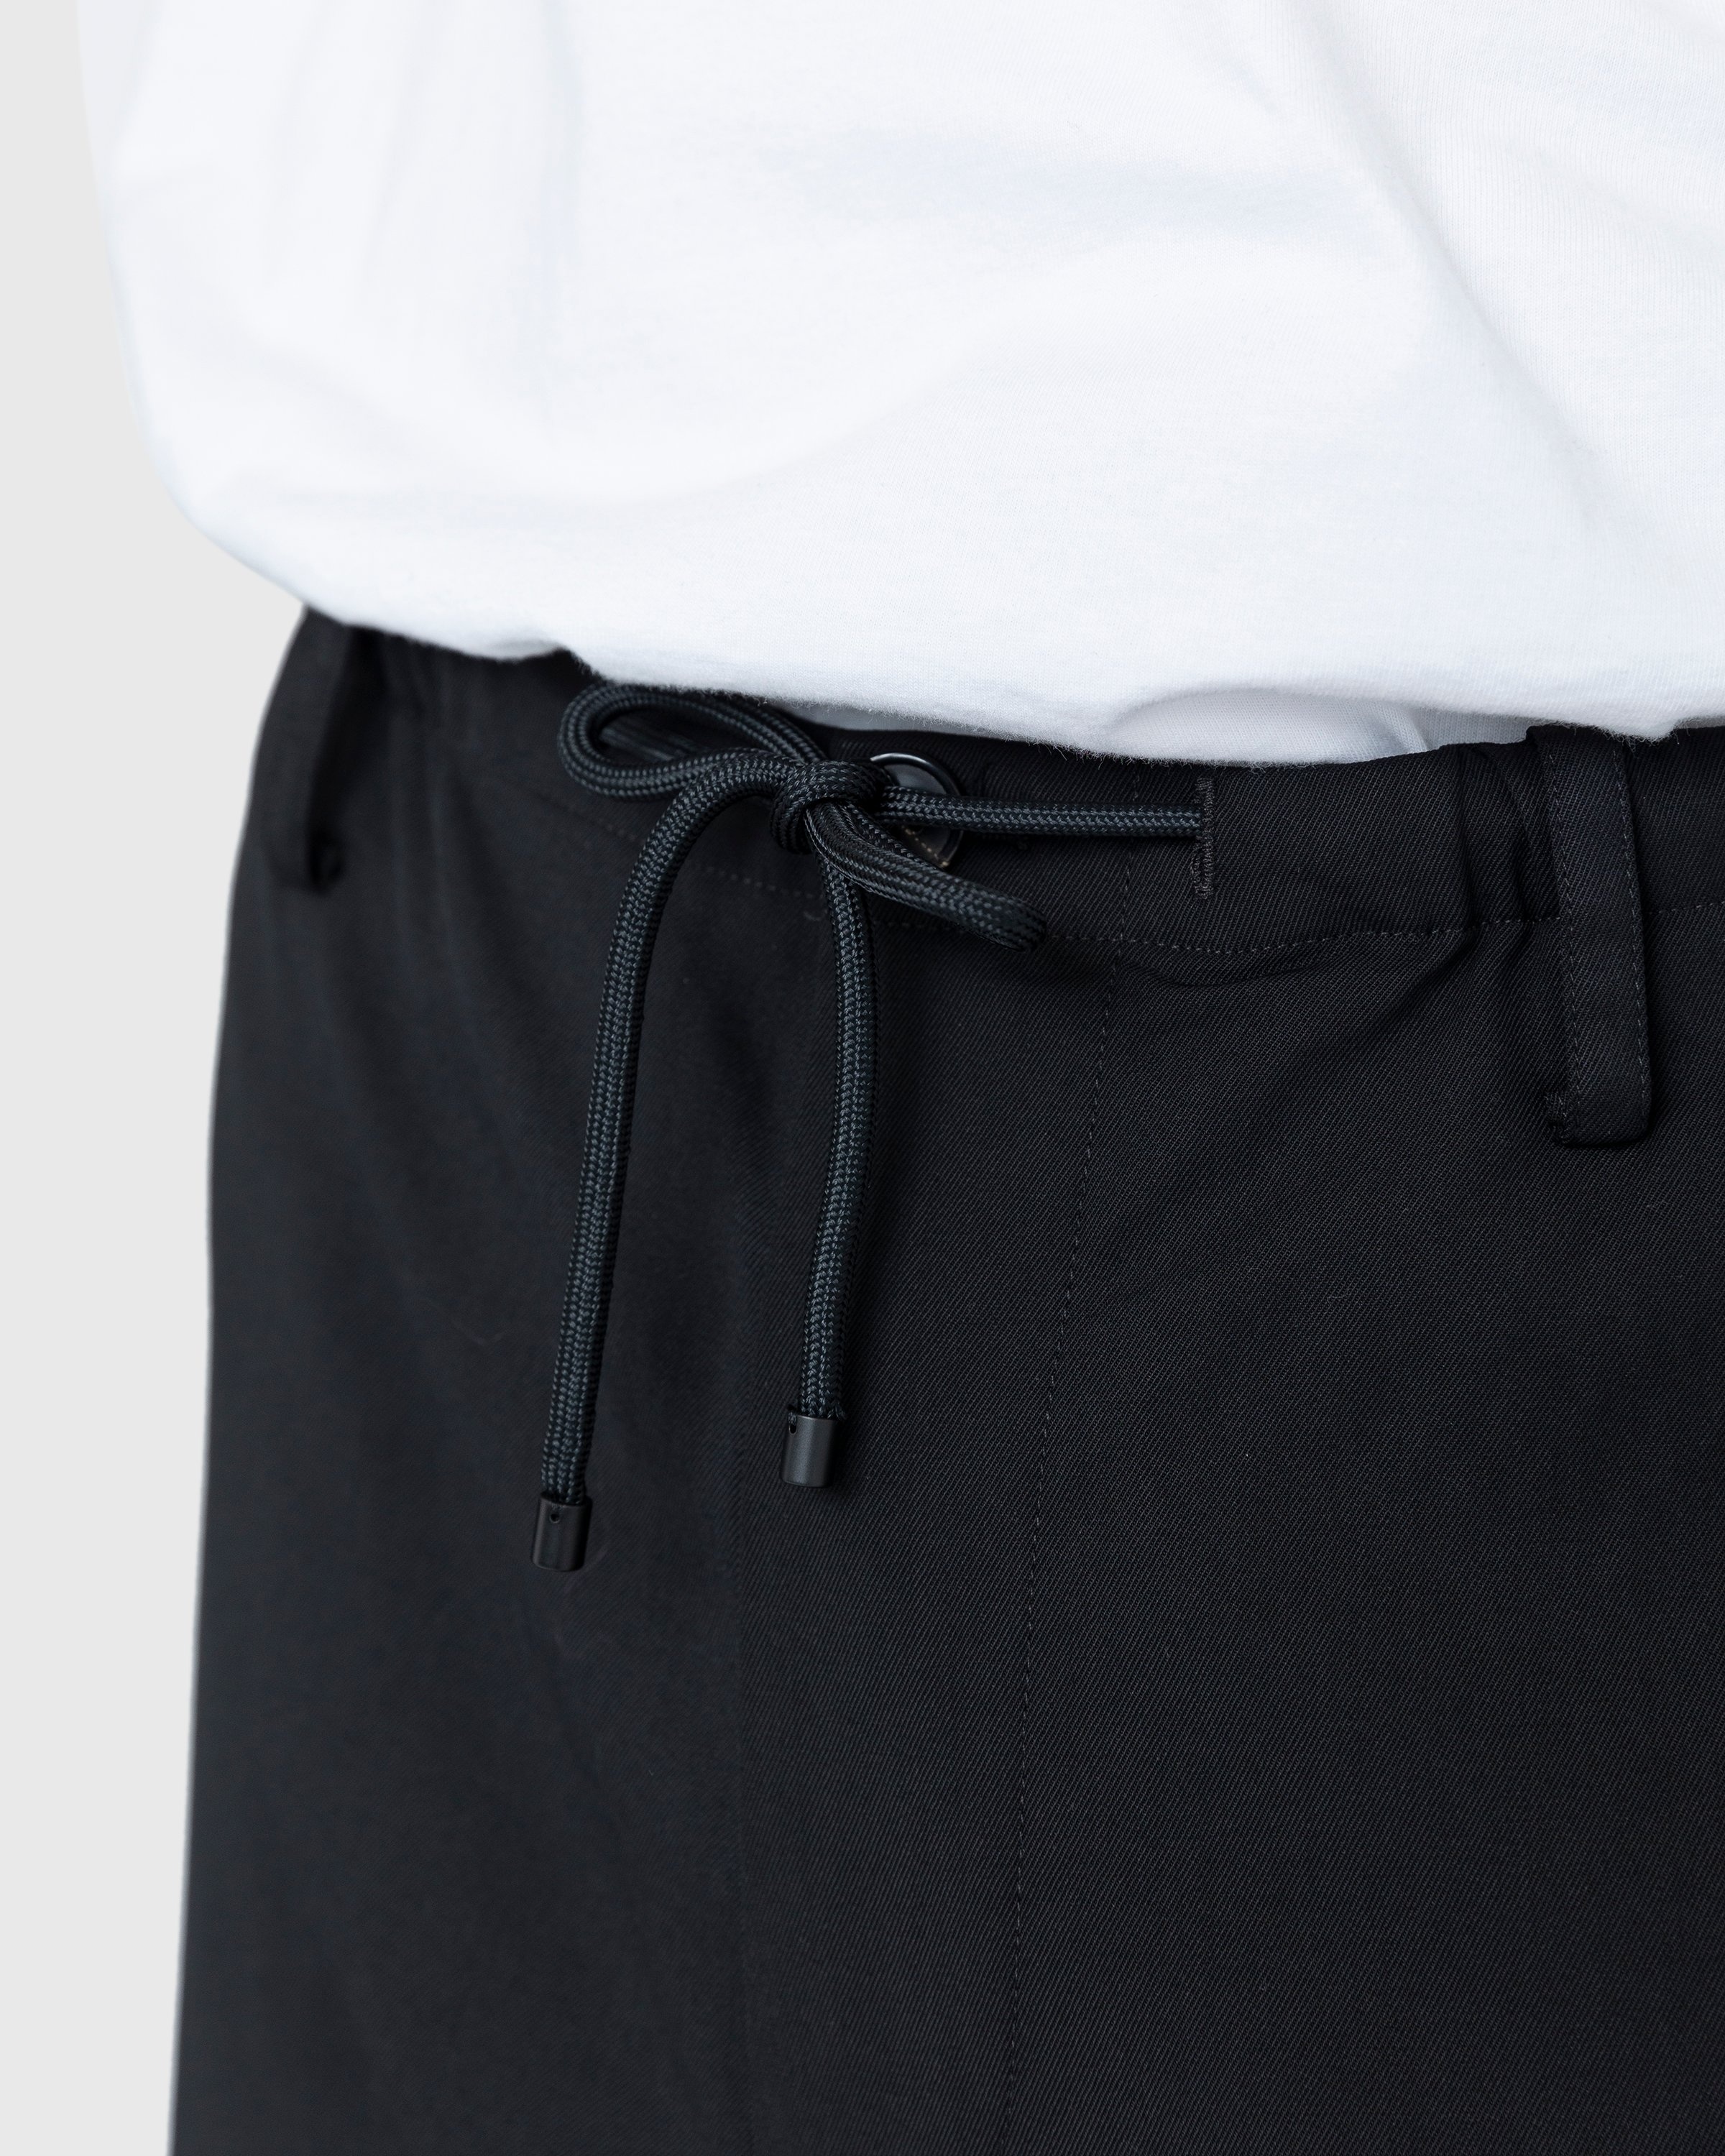 Dries van Noten – Penny Pants - Trousers - Black - Image 6